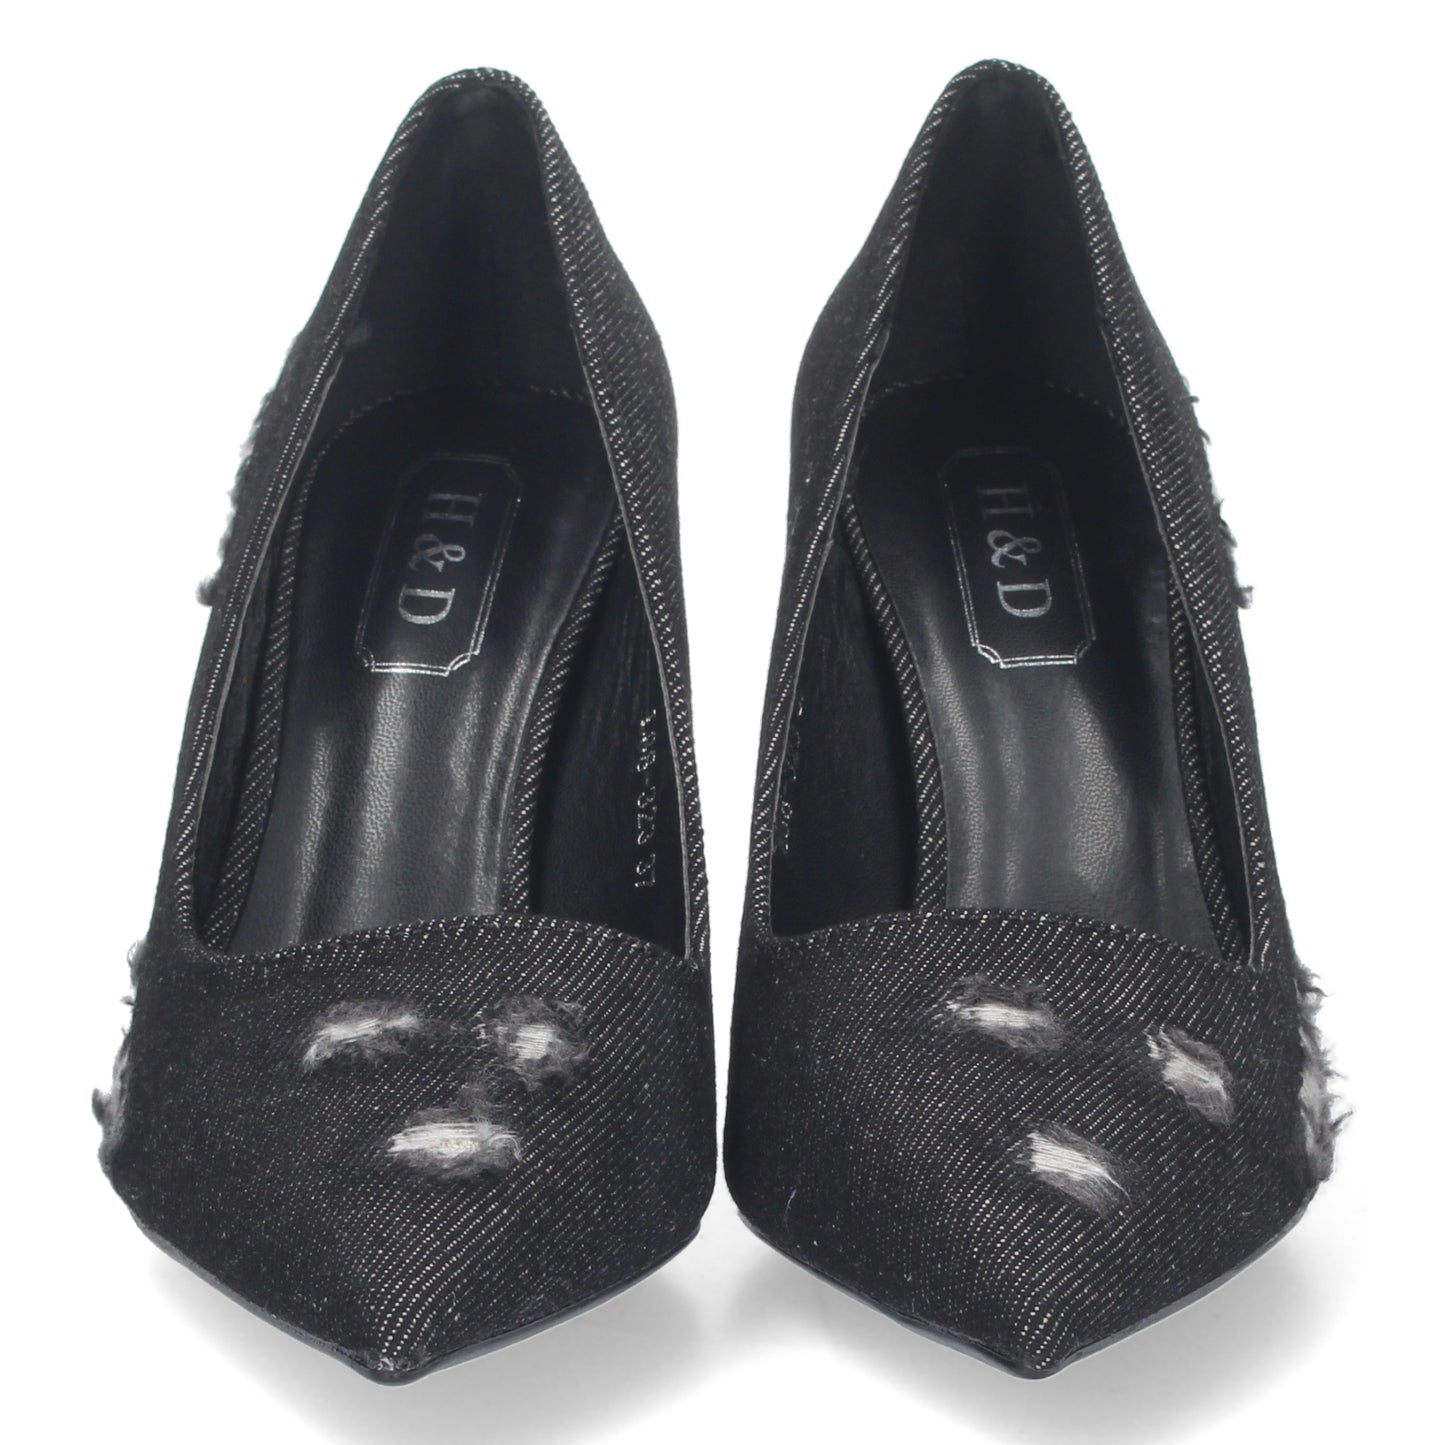 Zapato de Salon para Mujer  con Tacon  Comodo  de Punta Fina  Estampado Roto  sin Cierre  Ajustado al Pie